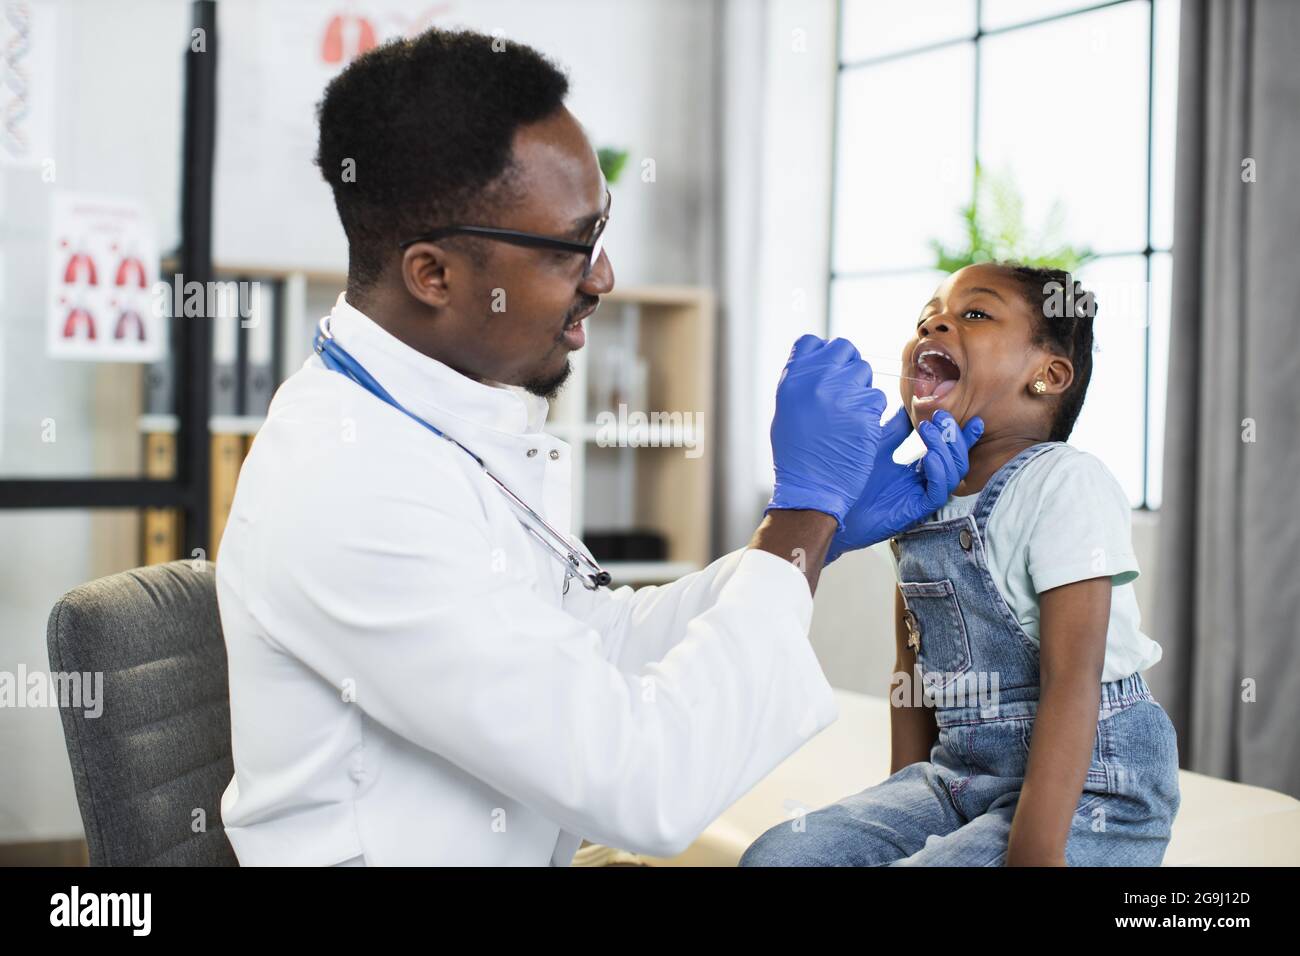 Bella bambina afro-americana seduta sul divano presso l'ufficio del medico, mentre bel medico maschio nero che esamina la gola e la bocca con la spatola. Concetto di Pediatria Foto Stock